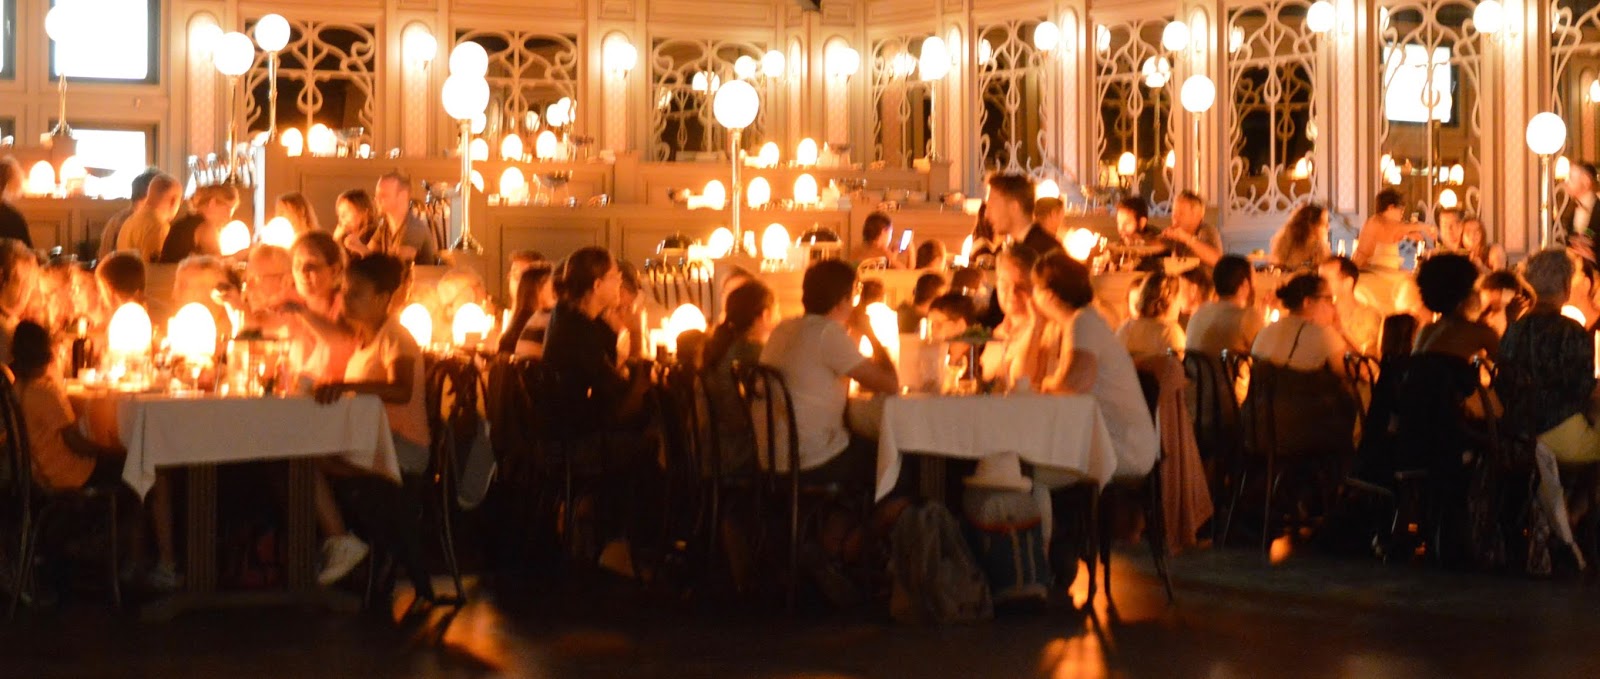 Puy du Fou Theme Park, France - - le cafe de madelon wedding setting 